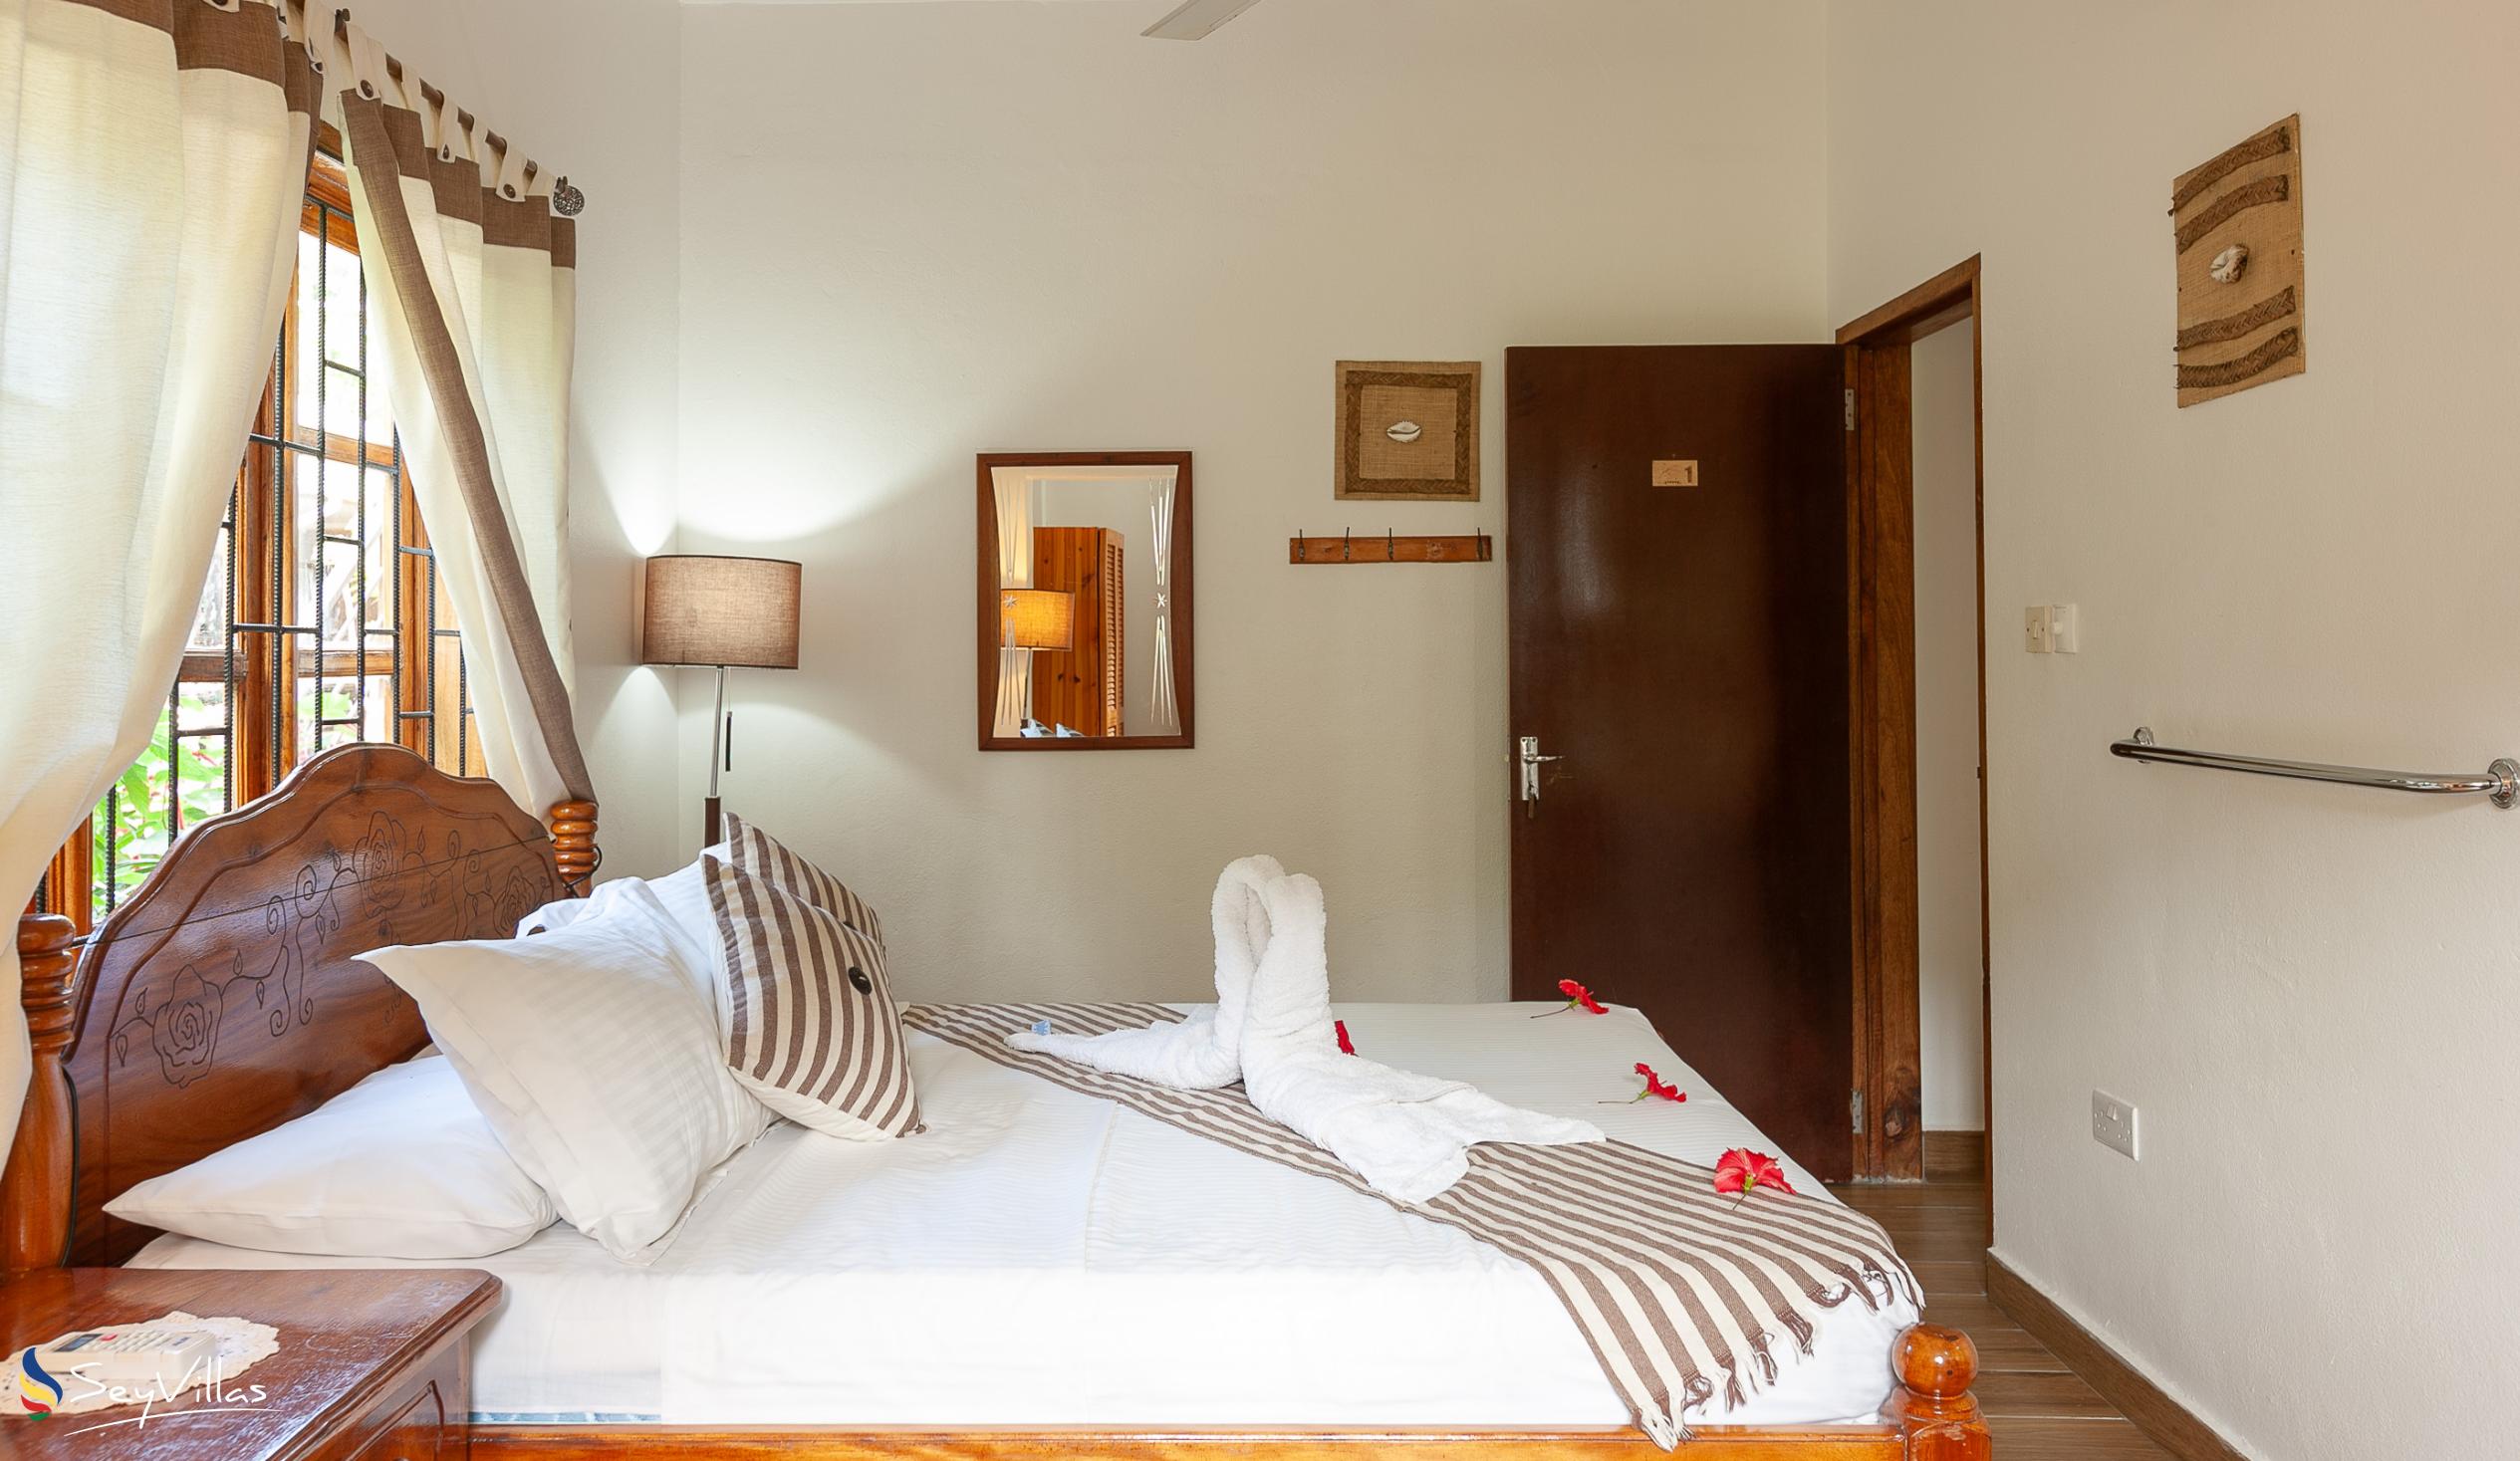 Photo 71: Tannette's Villa - Standard Double Room - La Digue (Seychelles)